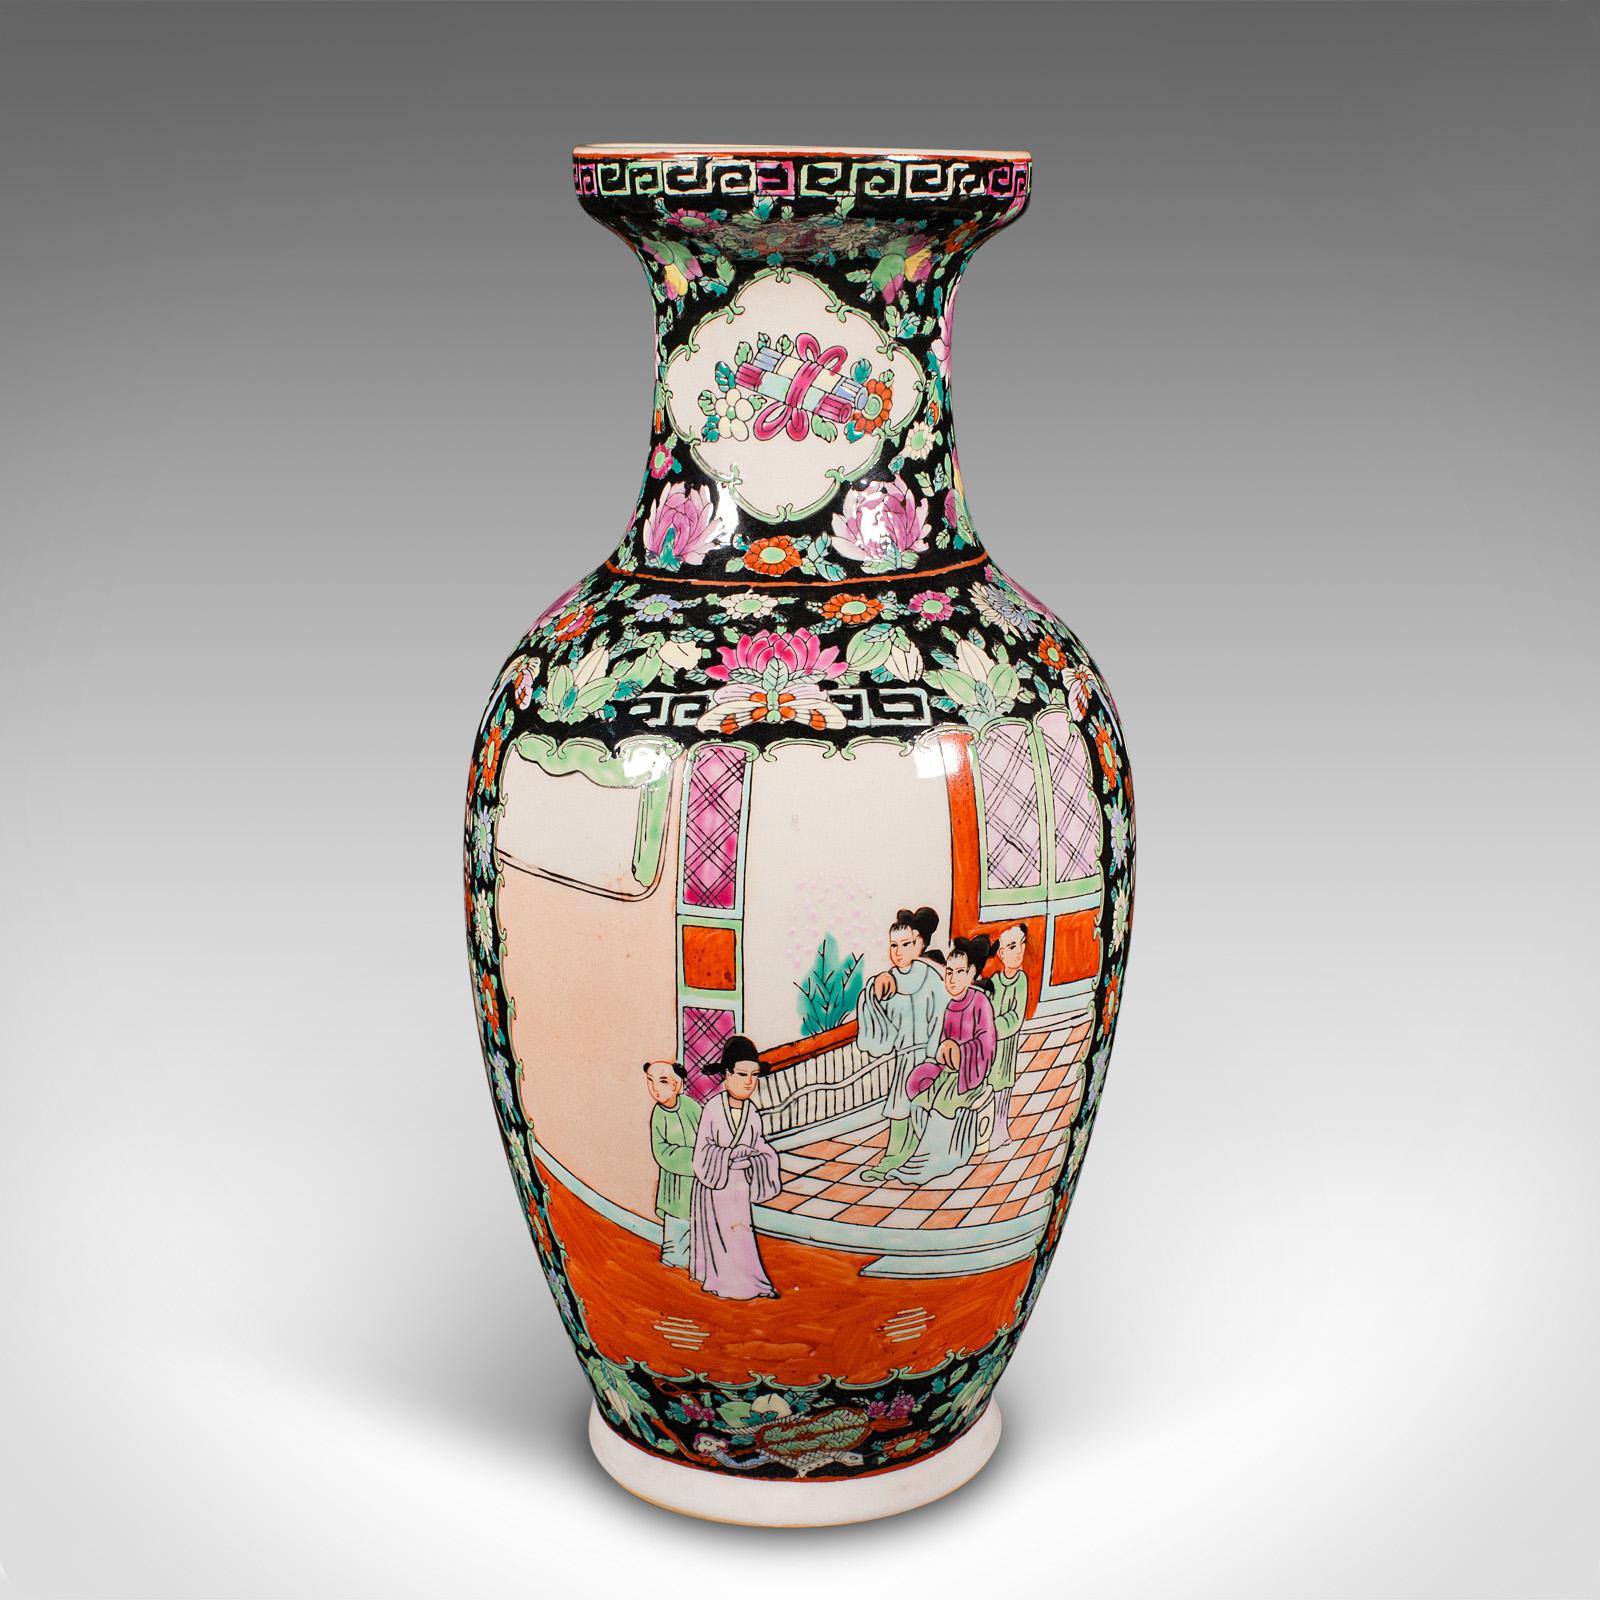 Il s'agit d'un grand vase à fleurs vintage. Urne chinoise en céramique de style Art déco, datant du milieu du XXe siècle, vers 1940.

Profondément décorée, elle reflète le goût oriental de l'Art déco.
Présente une patine d'ancienneté désirable en